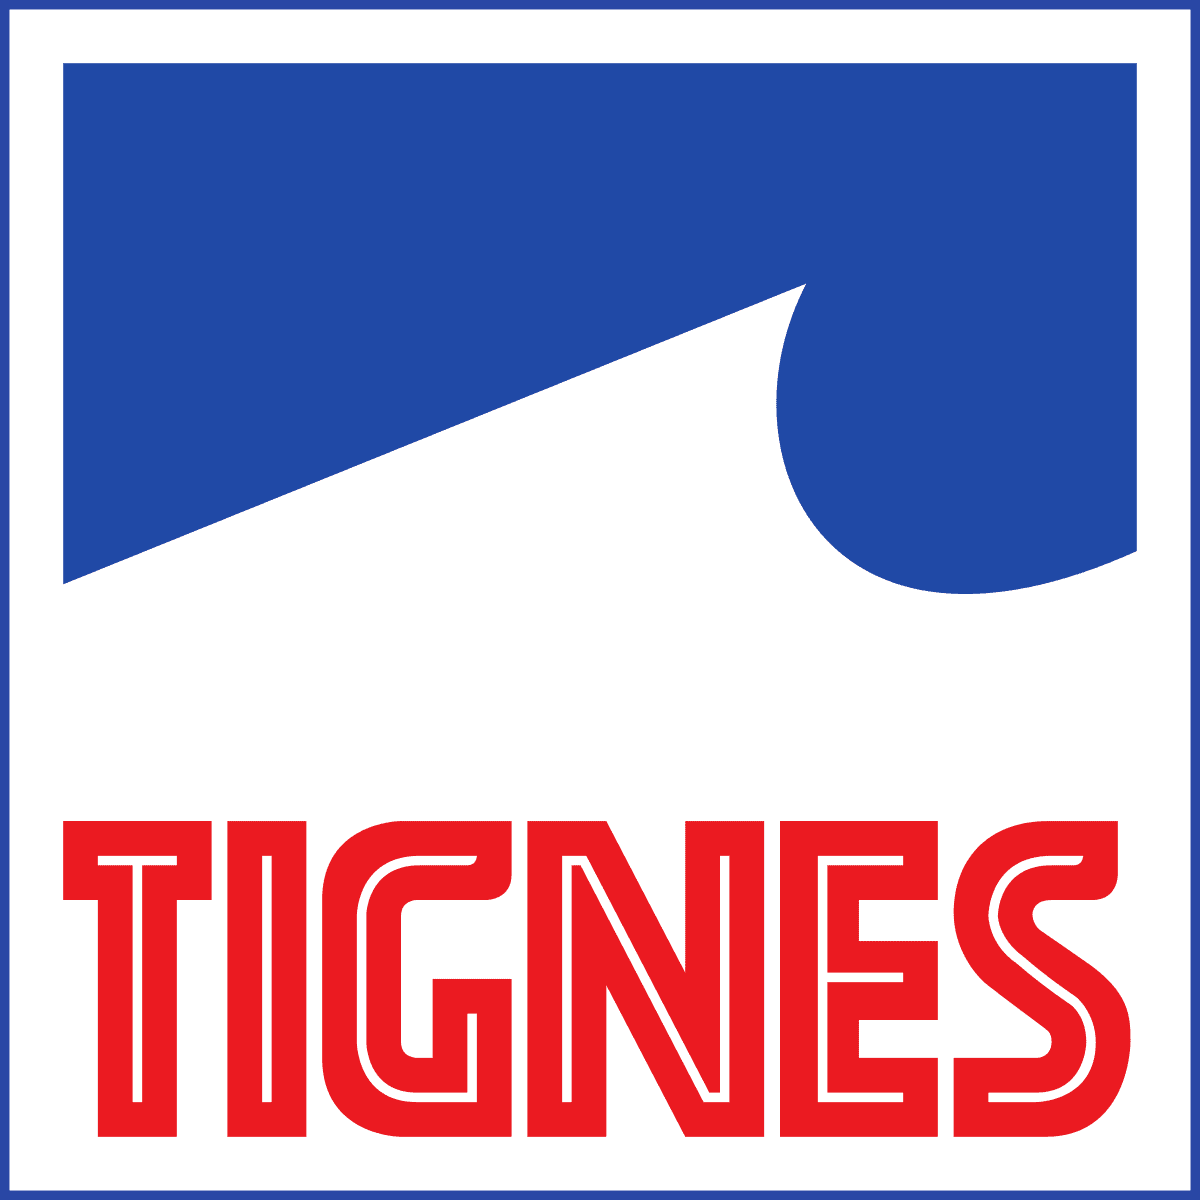 NAVETTE Tignes Aéroport Lyon 279-90 TTC 